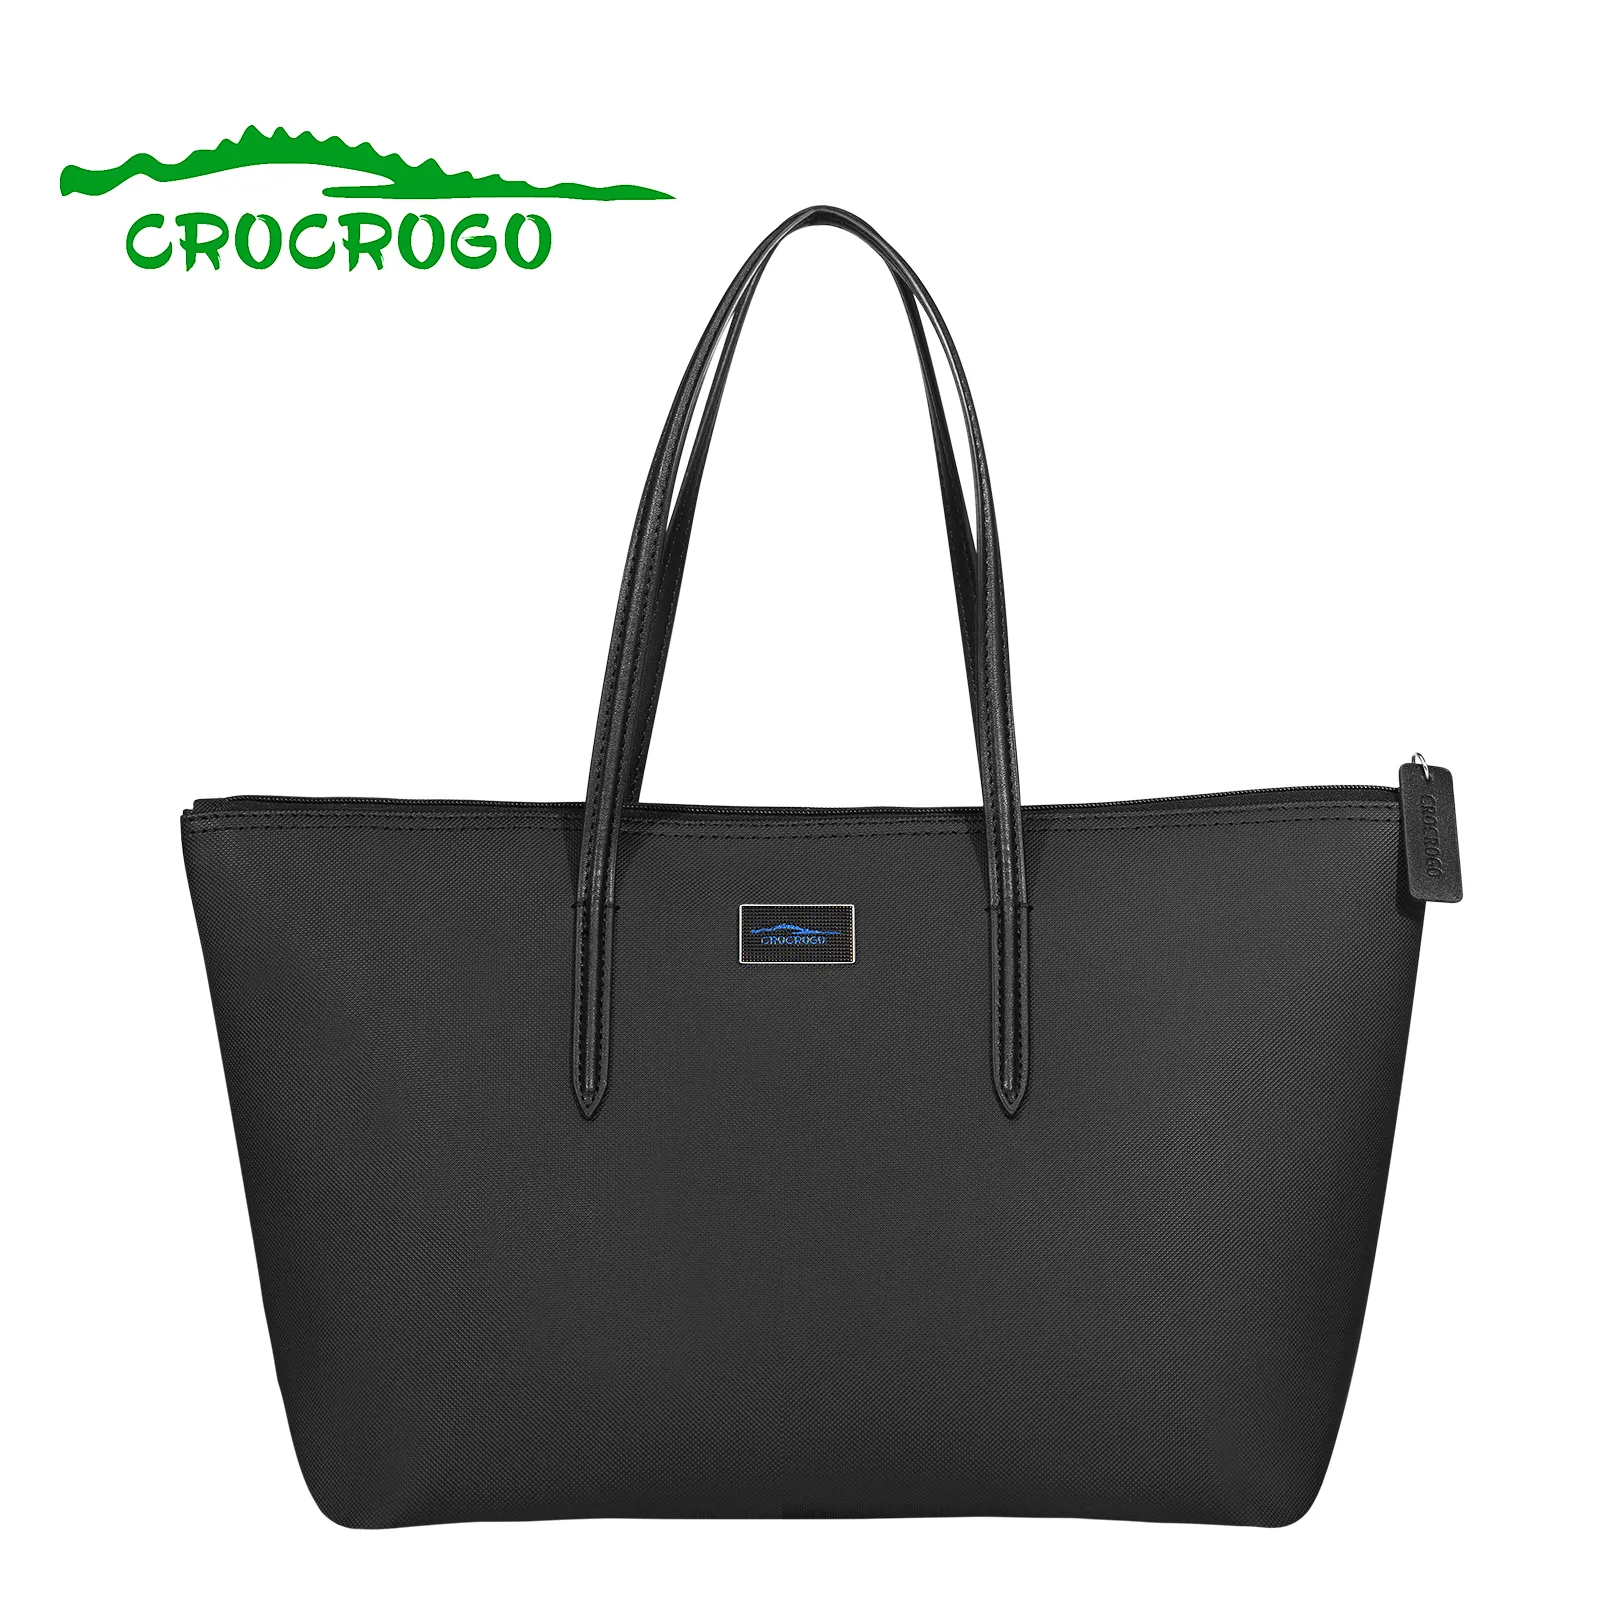 Damer crocrogo krokodil mode axel hand pvc läder shopping avslappnad resa laptop kontor dragkedja purses väskor